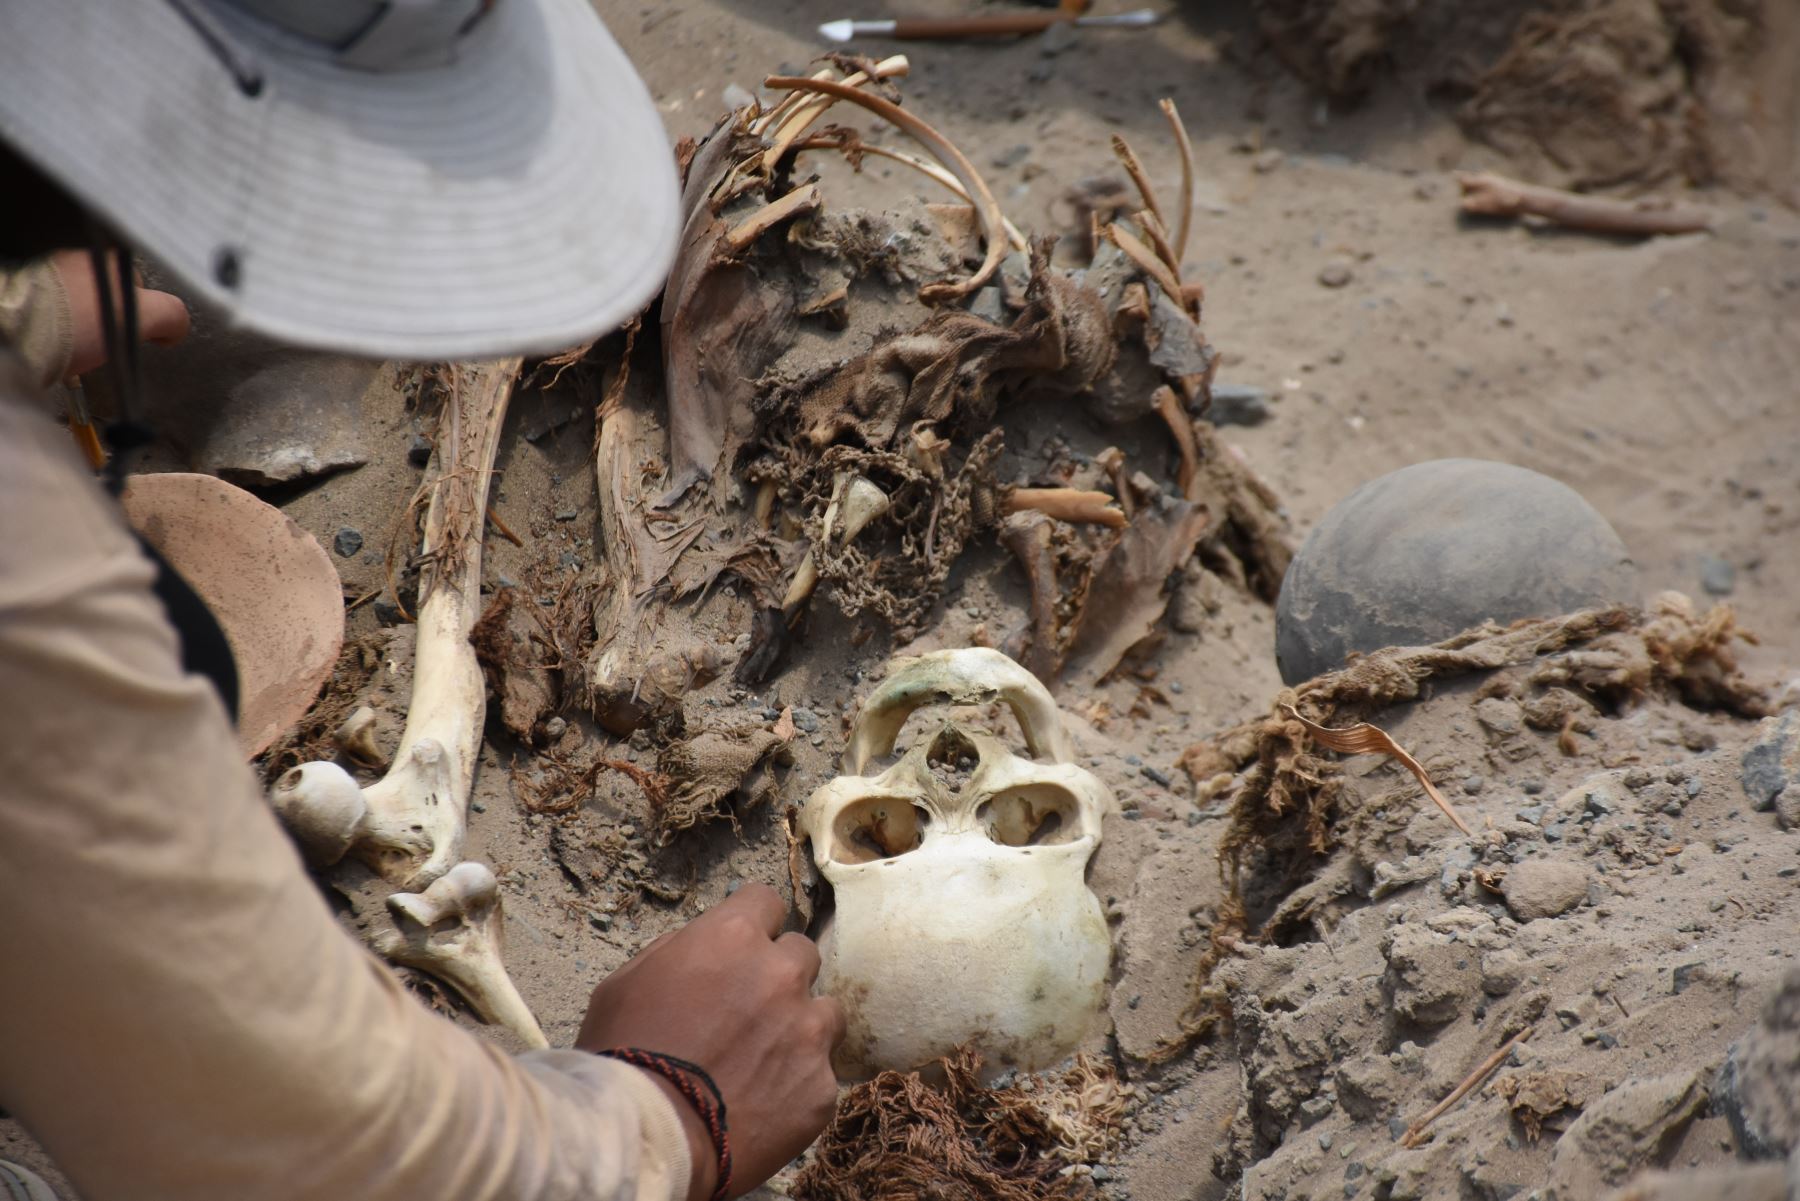 Arqueólogos de la Universidad Nacional Mayor de San Marcos hallaron dos restos humanos de 800 años de antigüedad en sitio arqueológico funerario Macatón, ubicado en la provincia de Huaral. ANDINA/Difusión